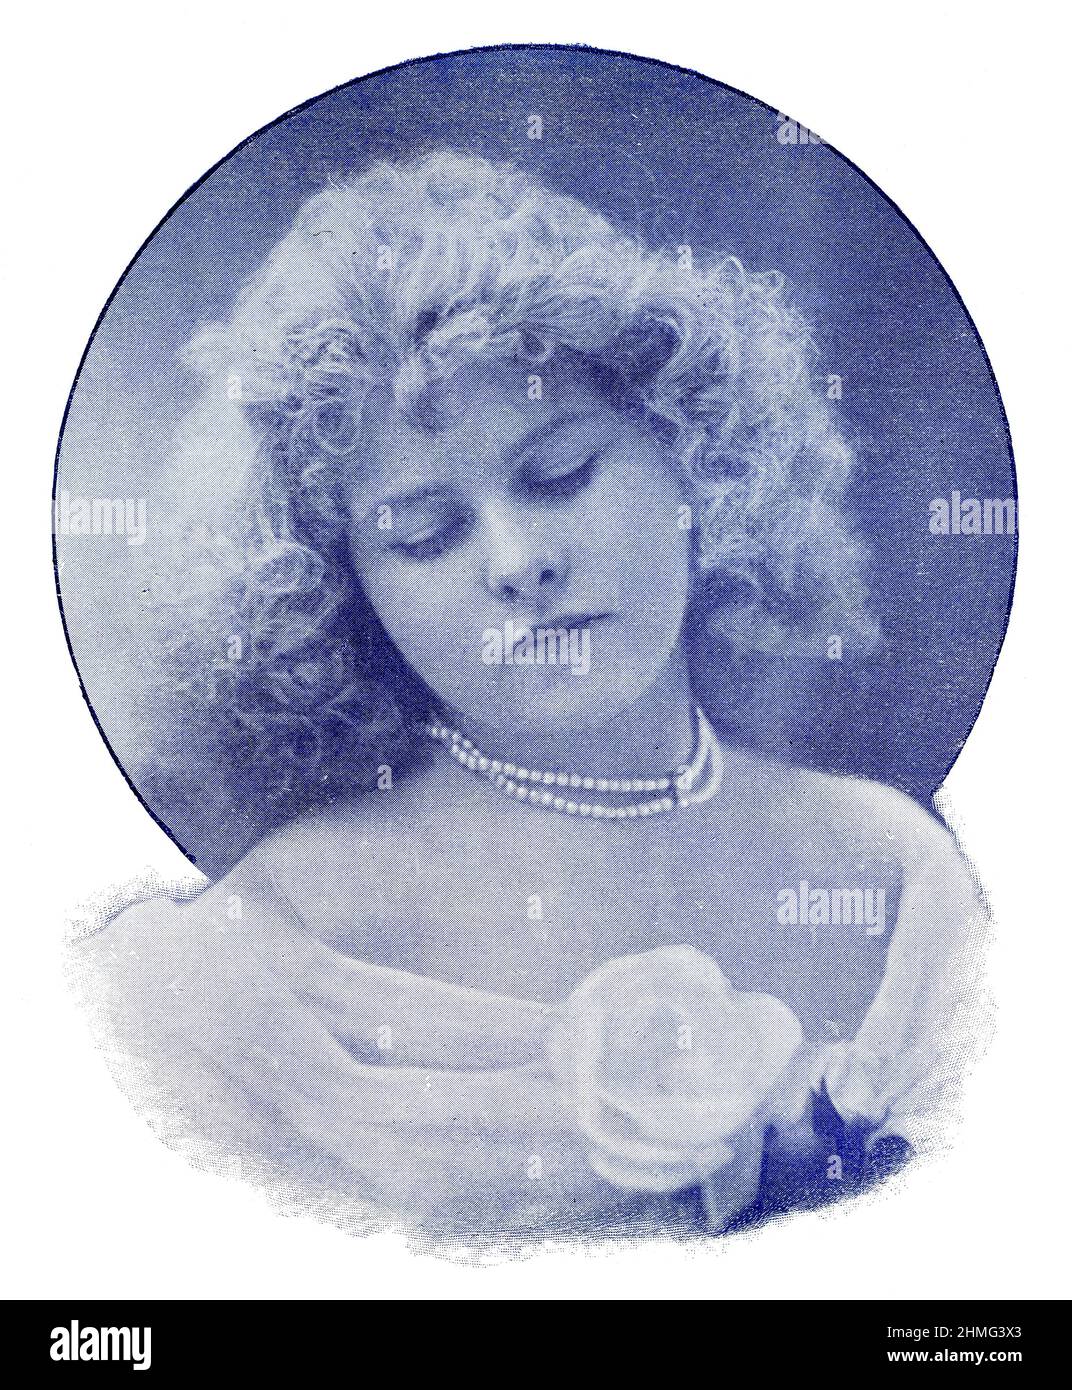 Portrait de May Marton par le photographe Alfred Ellis. May Marton était une actrice burlesque anglaise. Image du magazine de théâtre franco-allemand illustré « Das Album », 1898. Banque D'Images